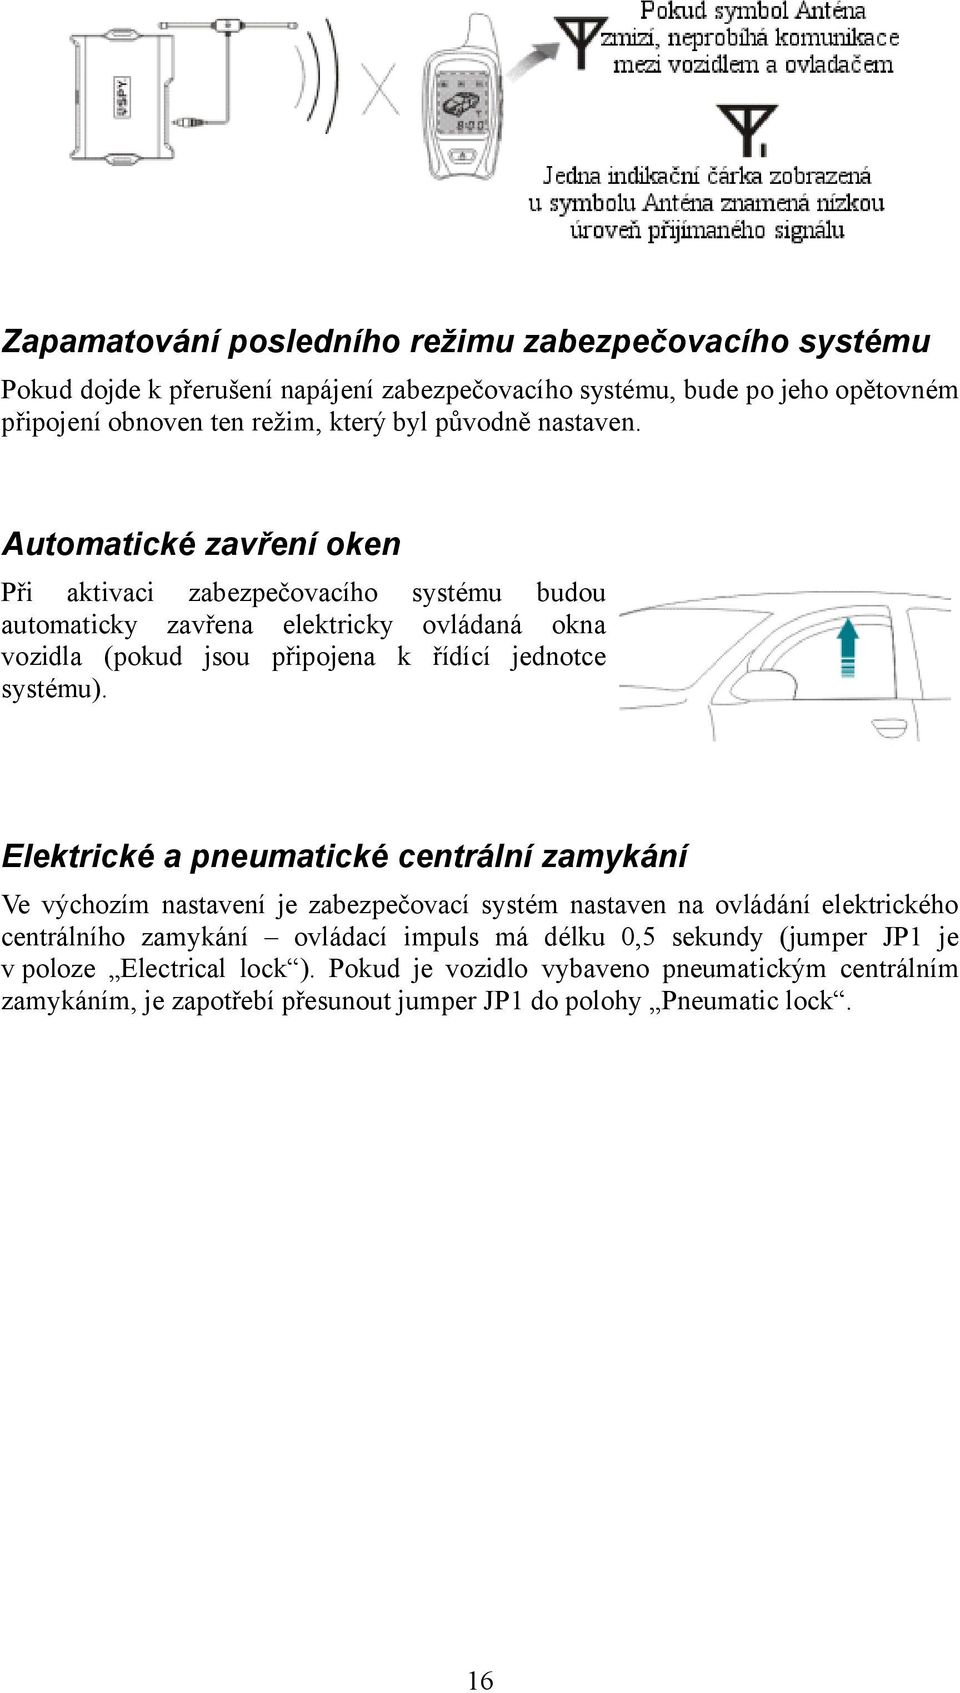 Automatické zavření oken Při aktivaci zabezpečovacího systému budou automaticky zavřena elektricky ovládaná okna vozidla (pokud jsou připojena k řídící jednotce systému).